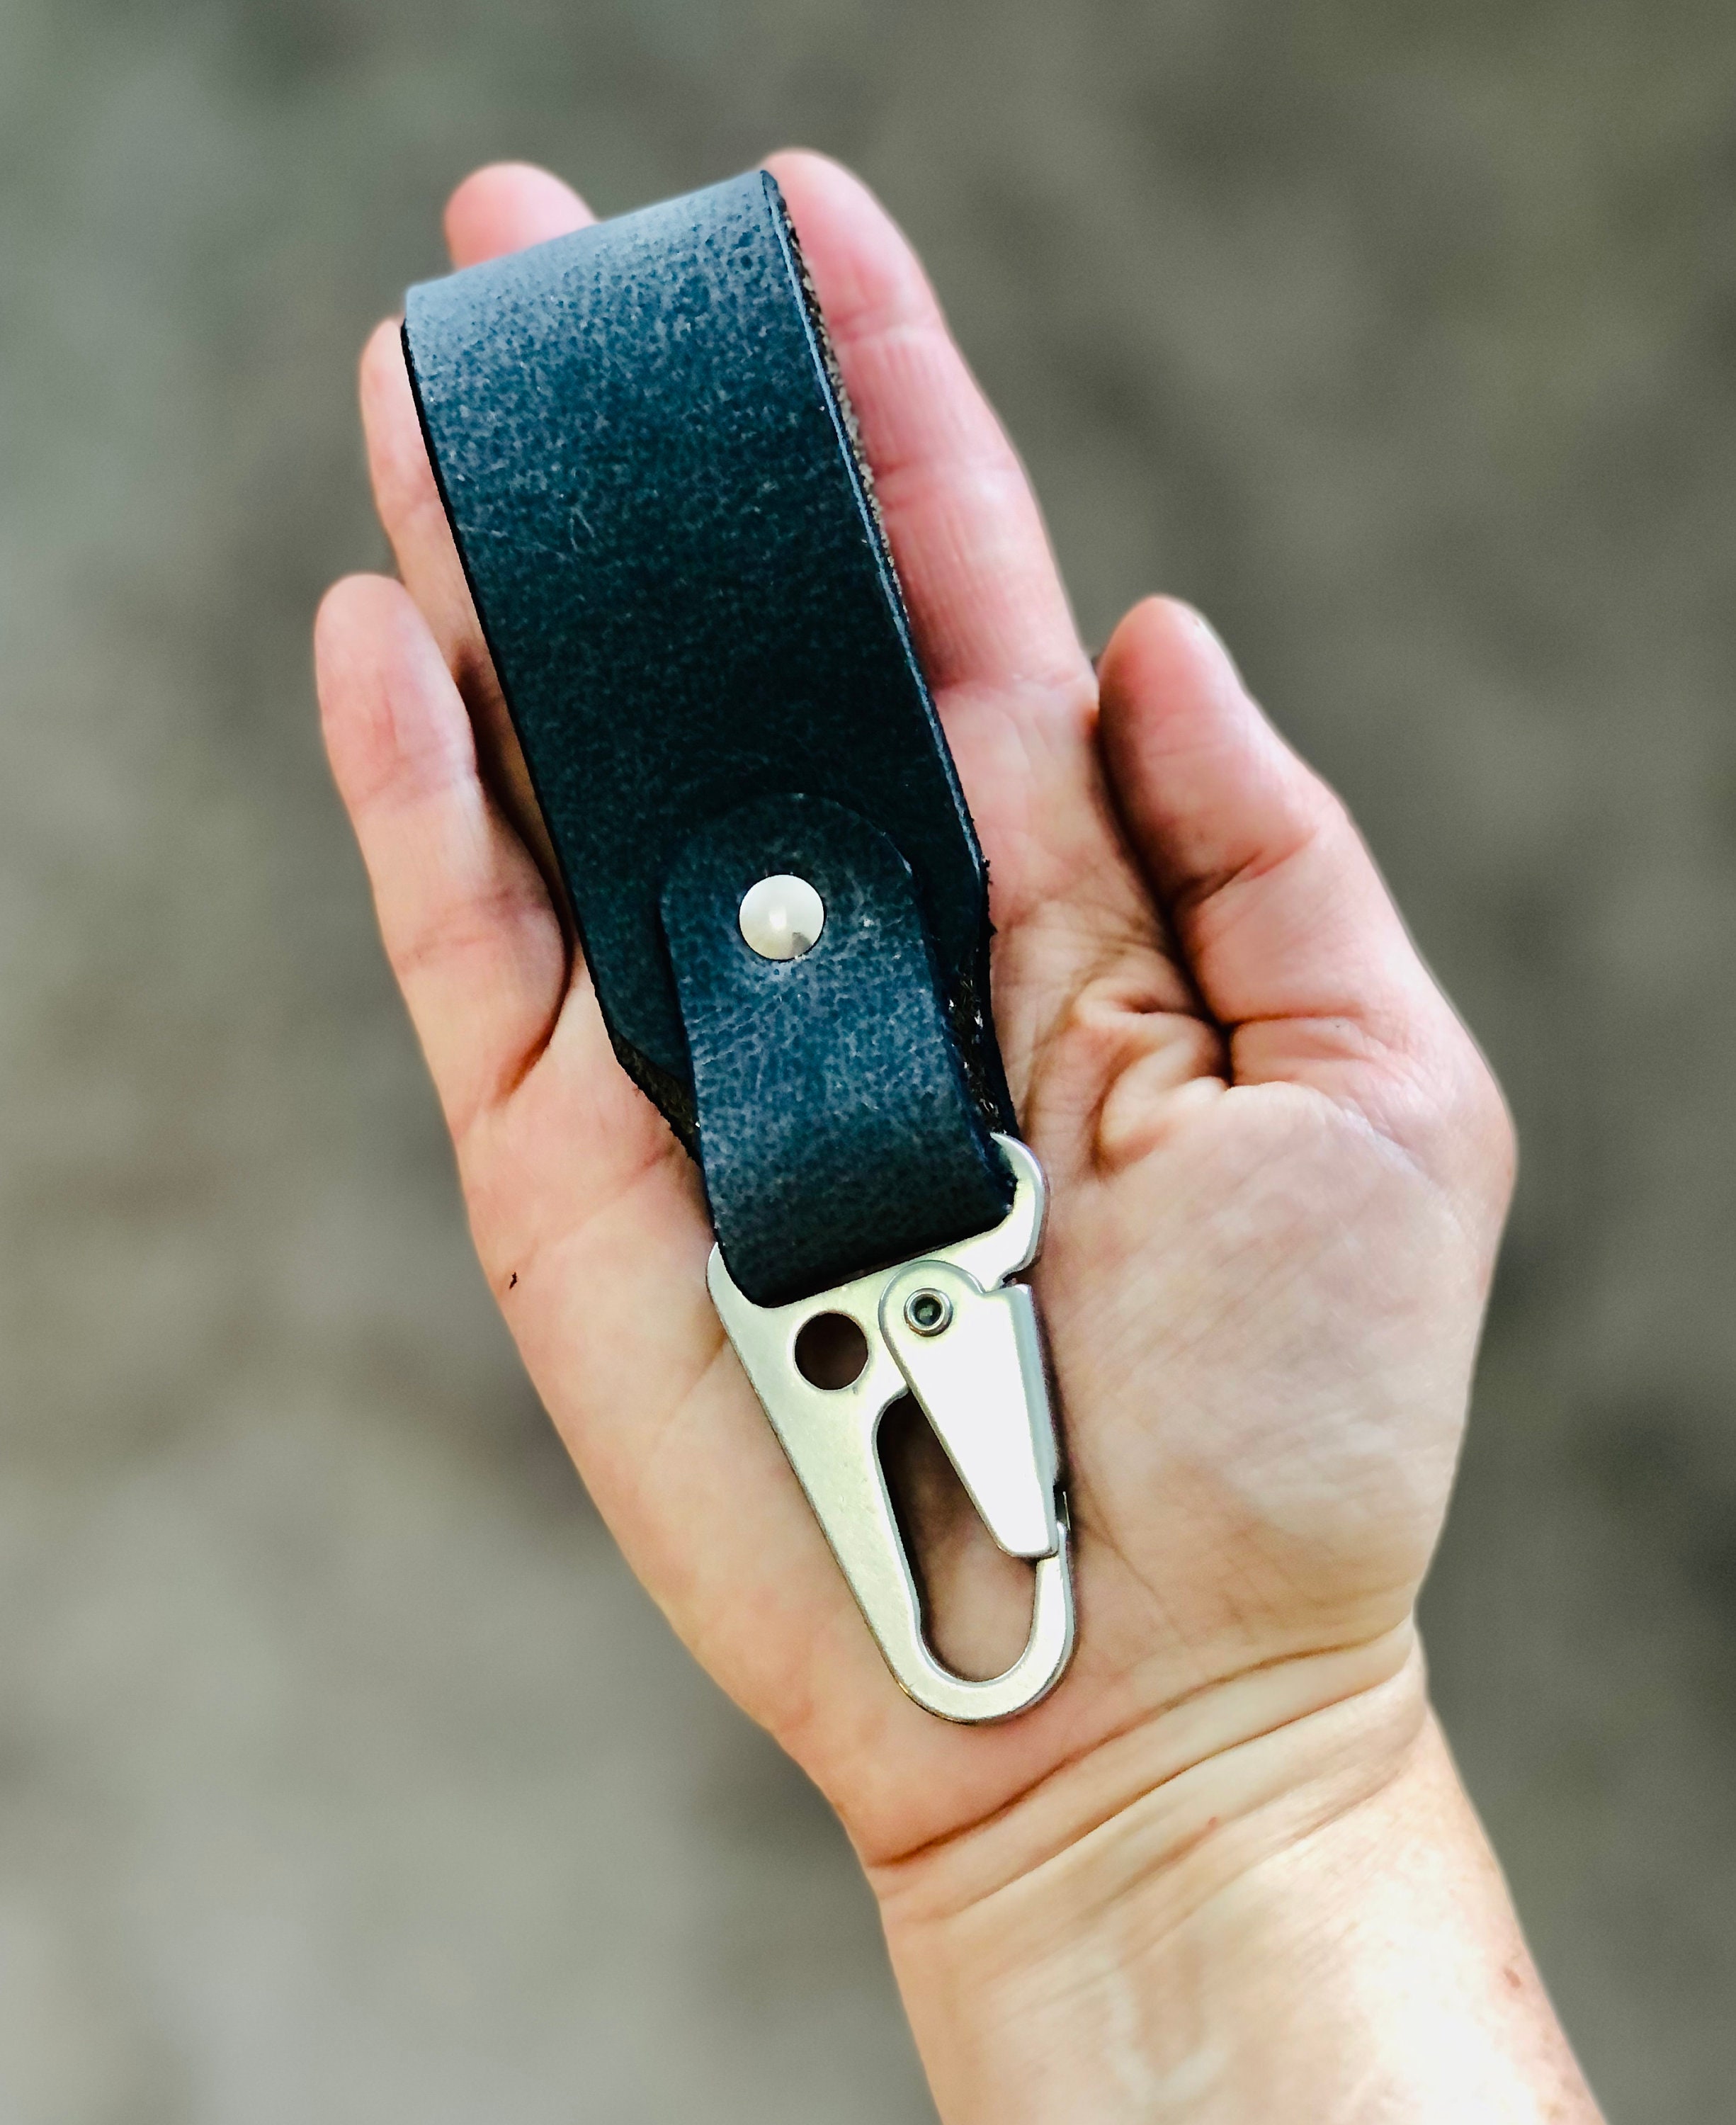 Full grain leather belt key holder distressed leather belt hook clip for  keys